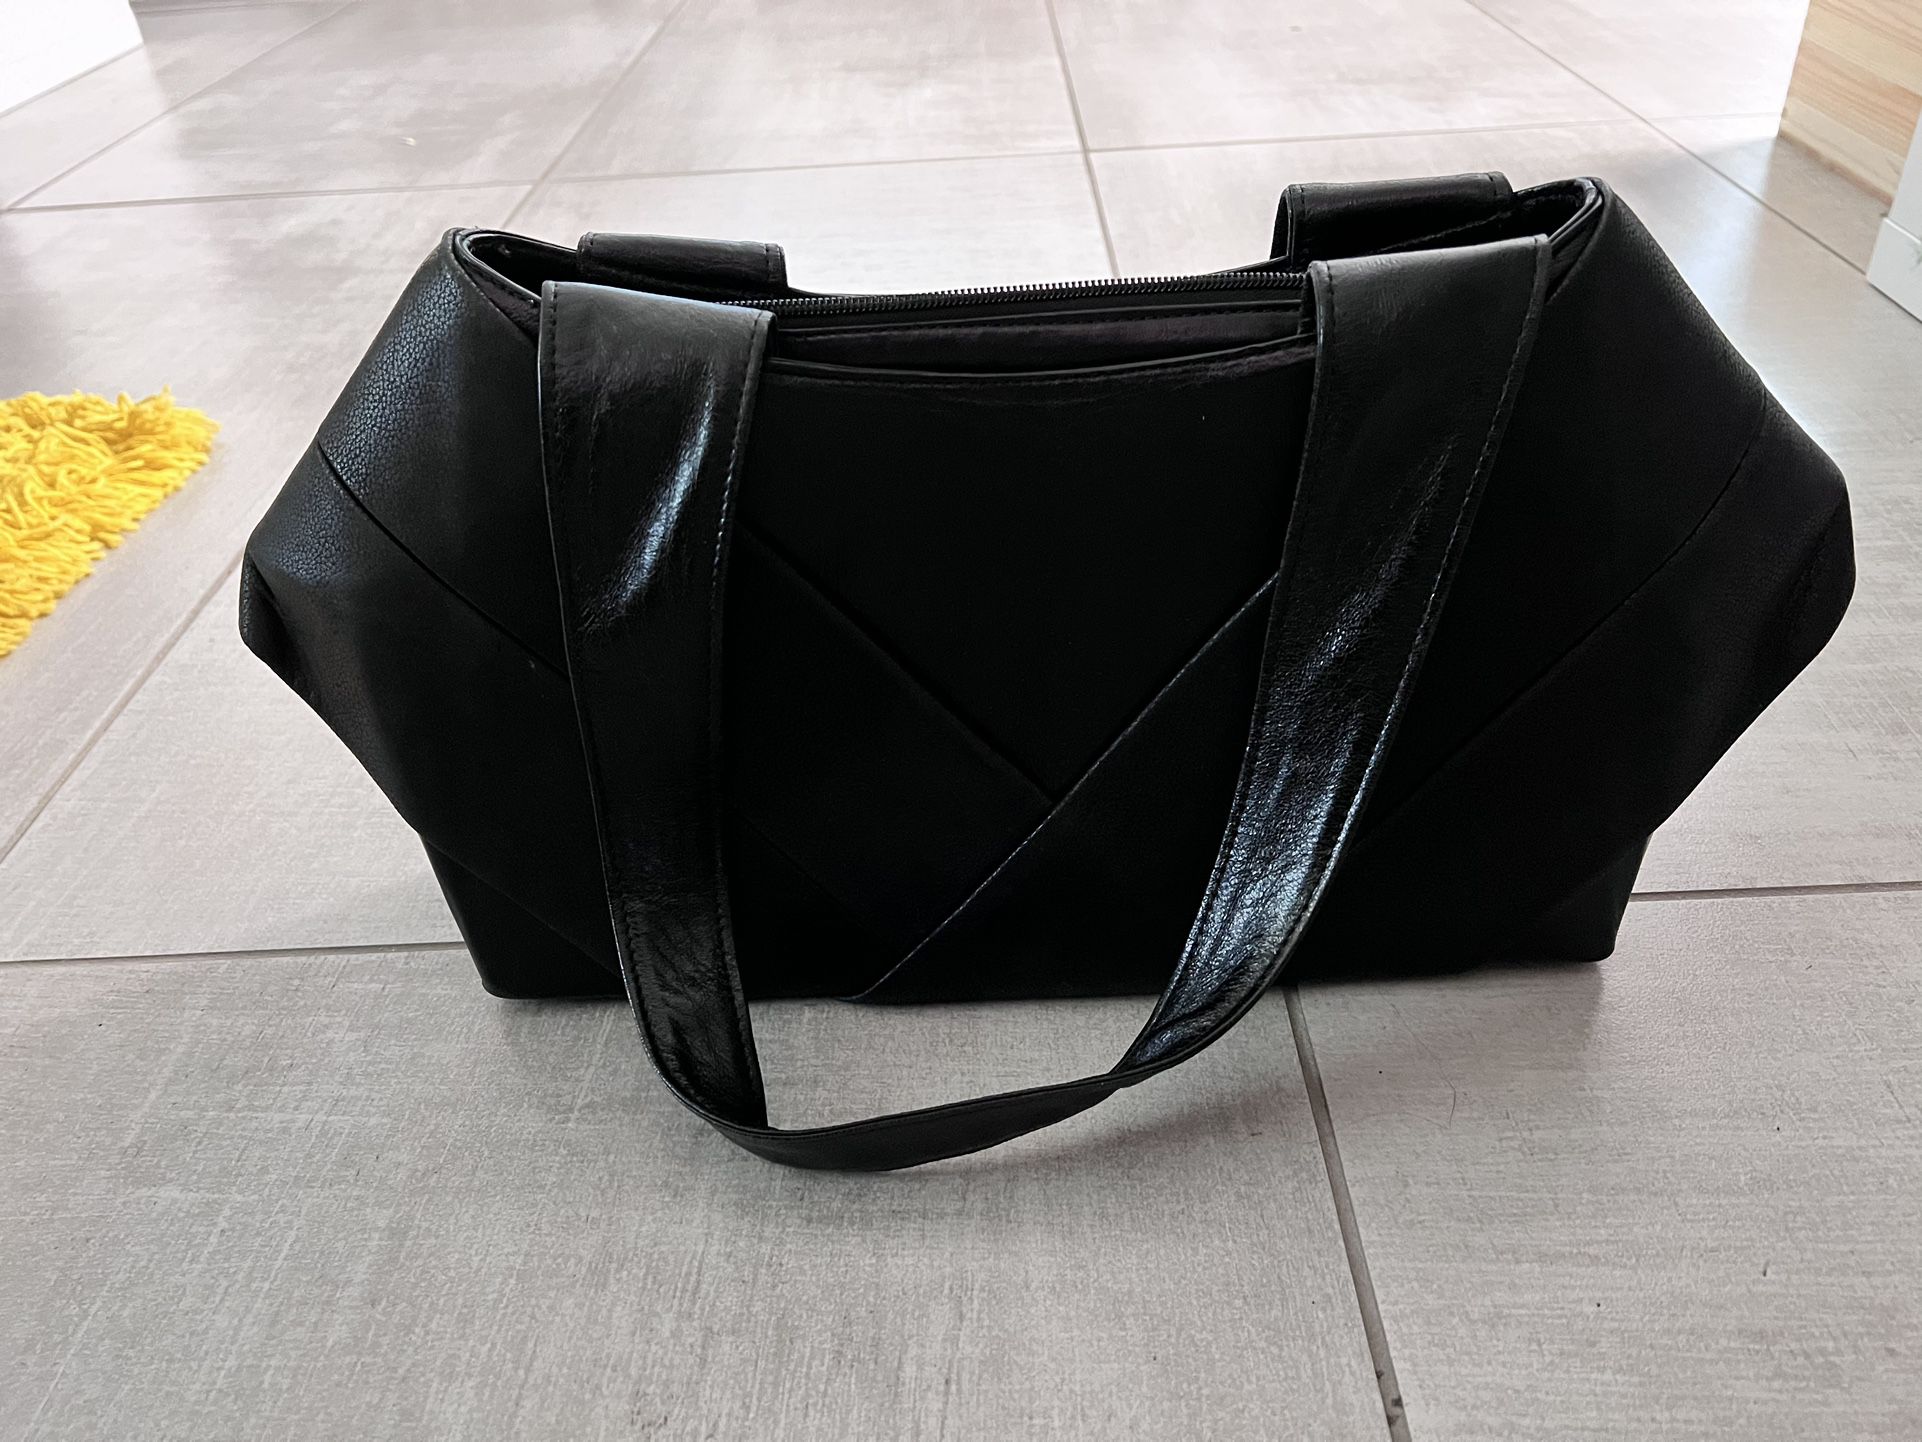 Giani Bernini Red Genuine Leather Satchel Handbag Shoulder Bag for Sale in  No Fort Myers, FL - OfferUp